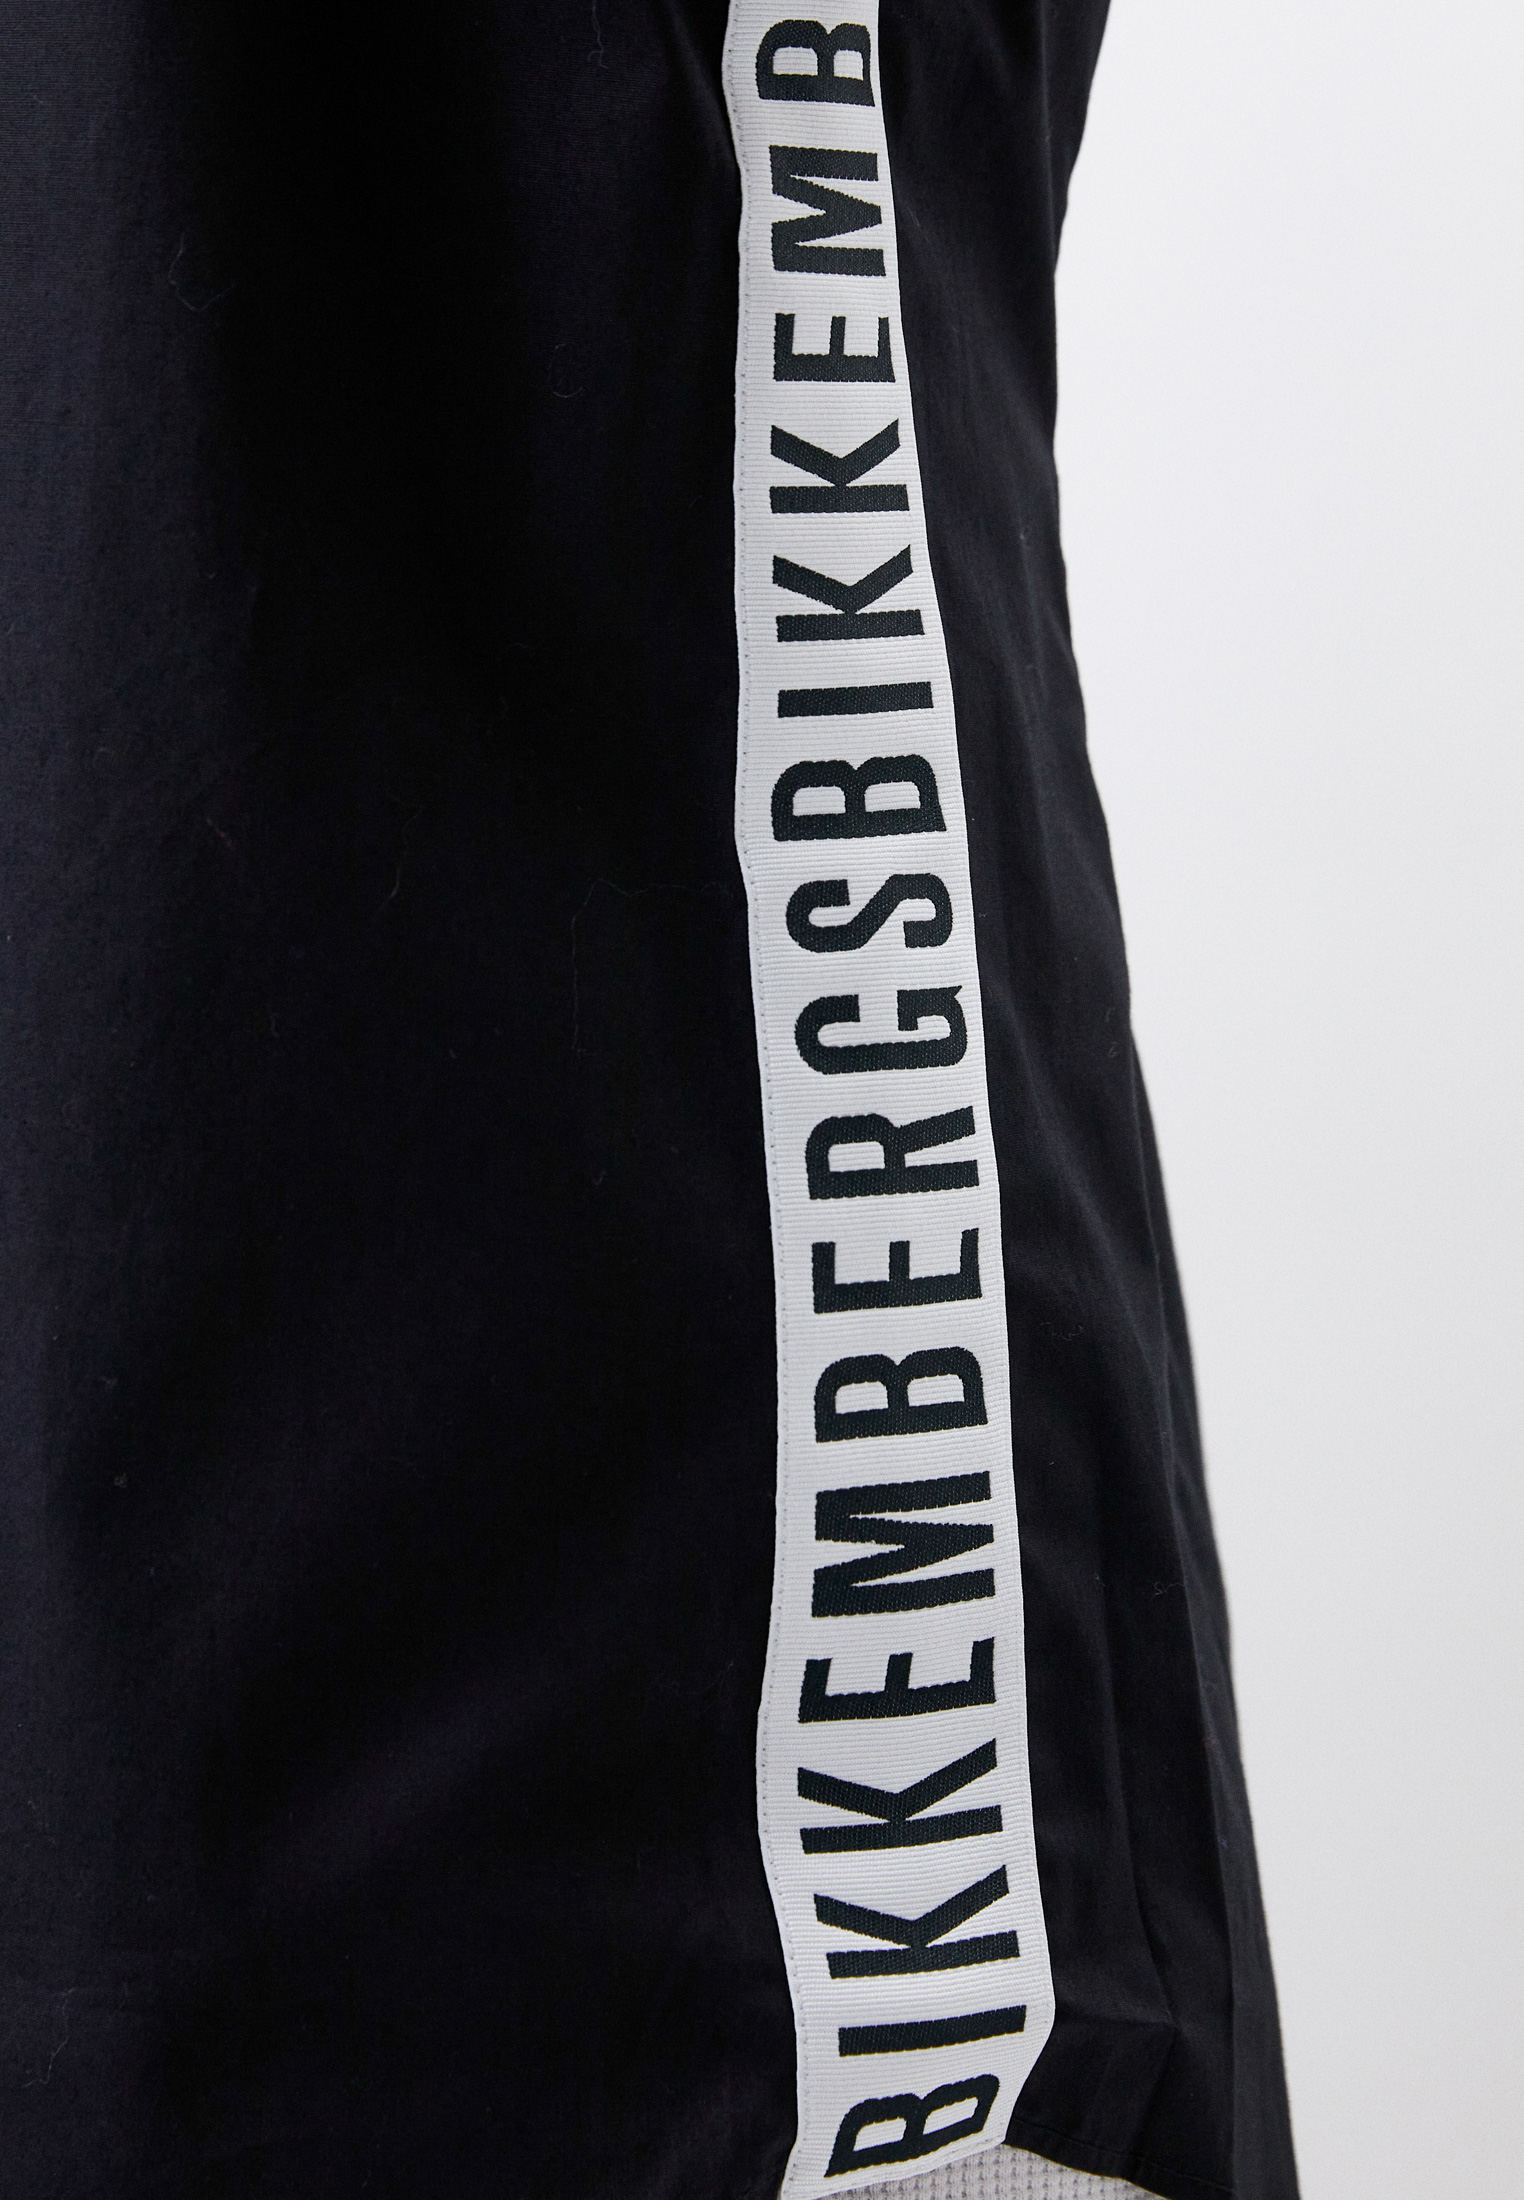 Рубашка с длинным рукавом Bikkembergs (Биккембергс) C C 055 81 S 2931: изображение 4